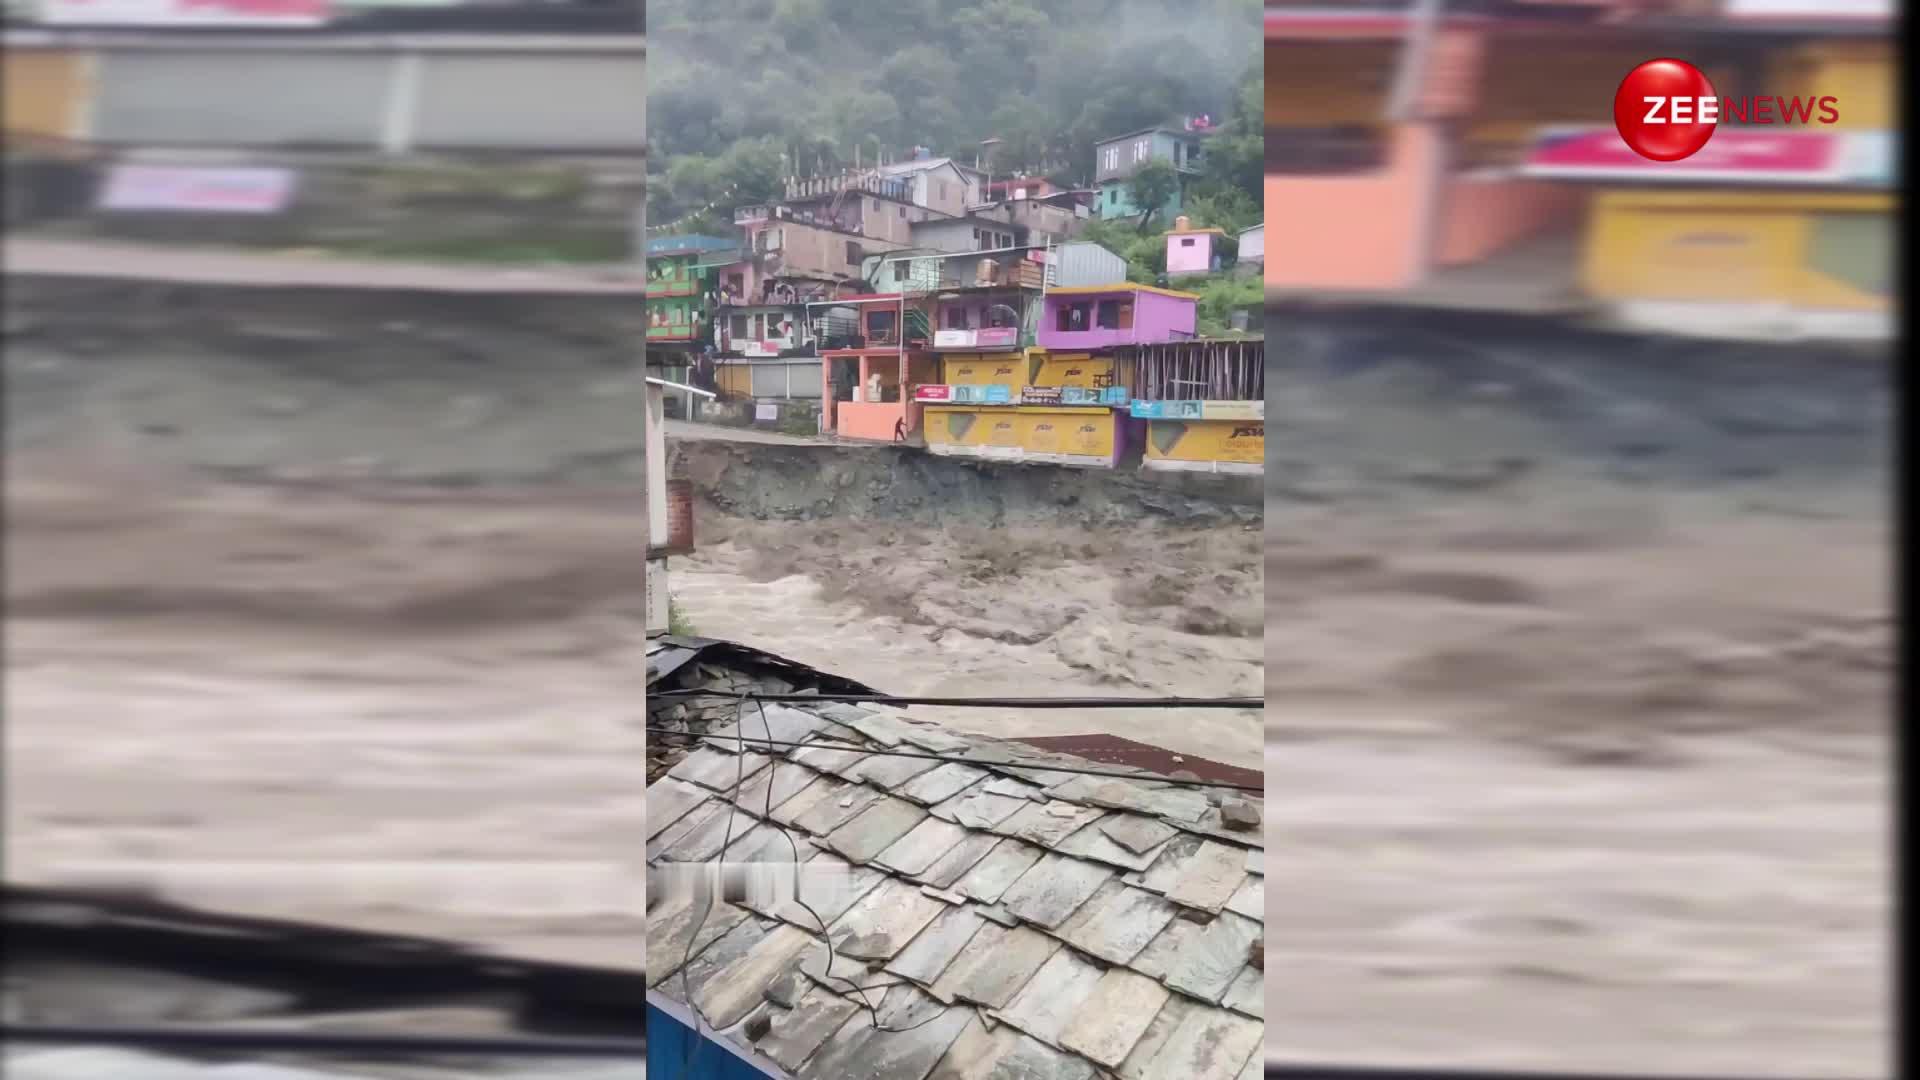 पास से बाढ़ का नजारा देखना अंकल को पड़ा भारी, ऐसा मंजर आंखों में समा गया होगा, देखें ये खतरनाक वीडियो